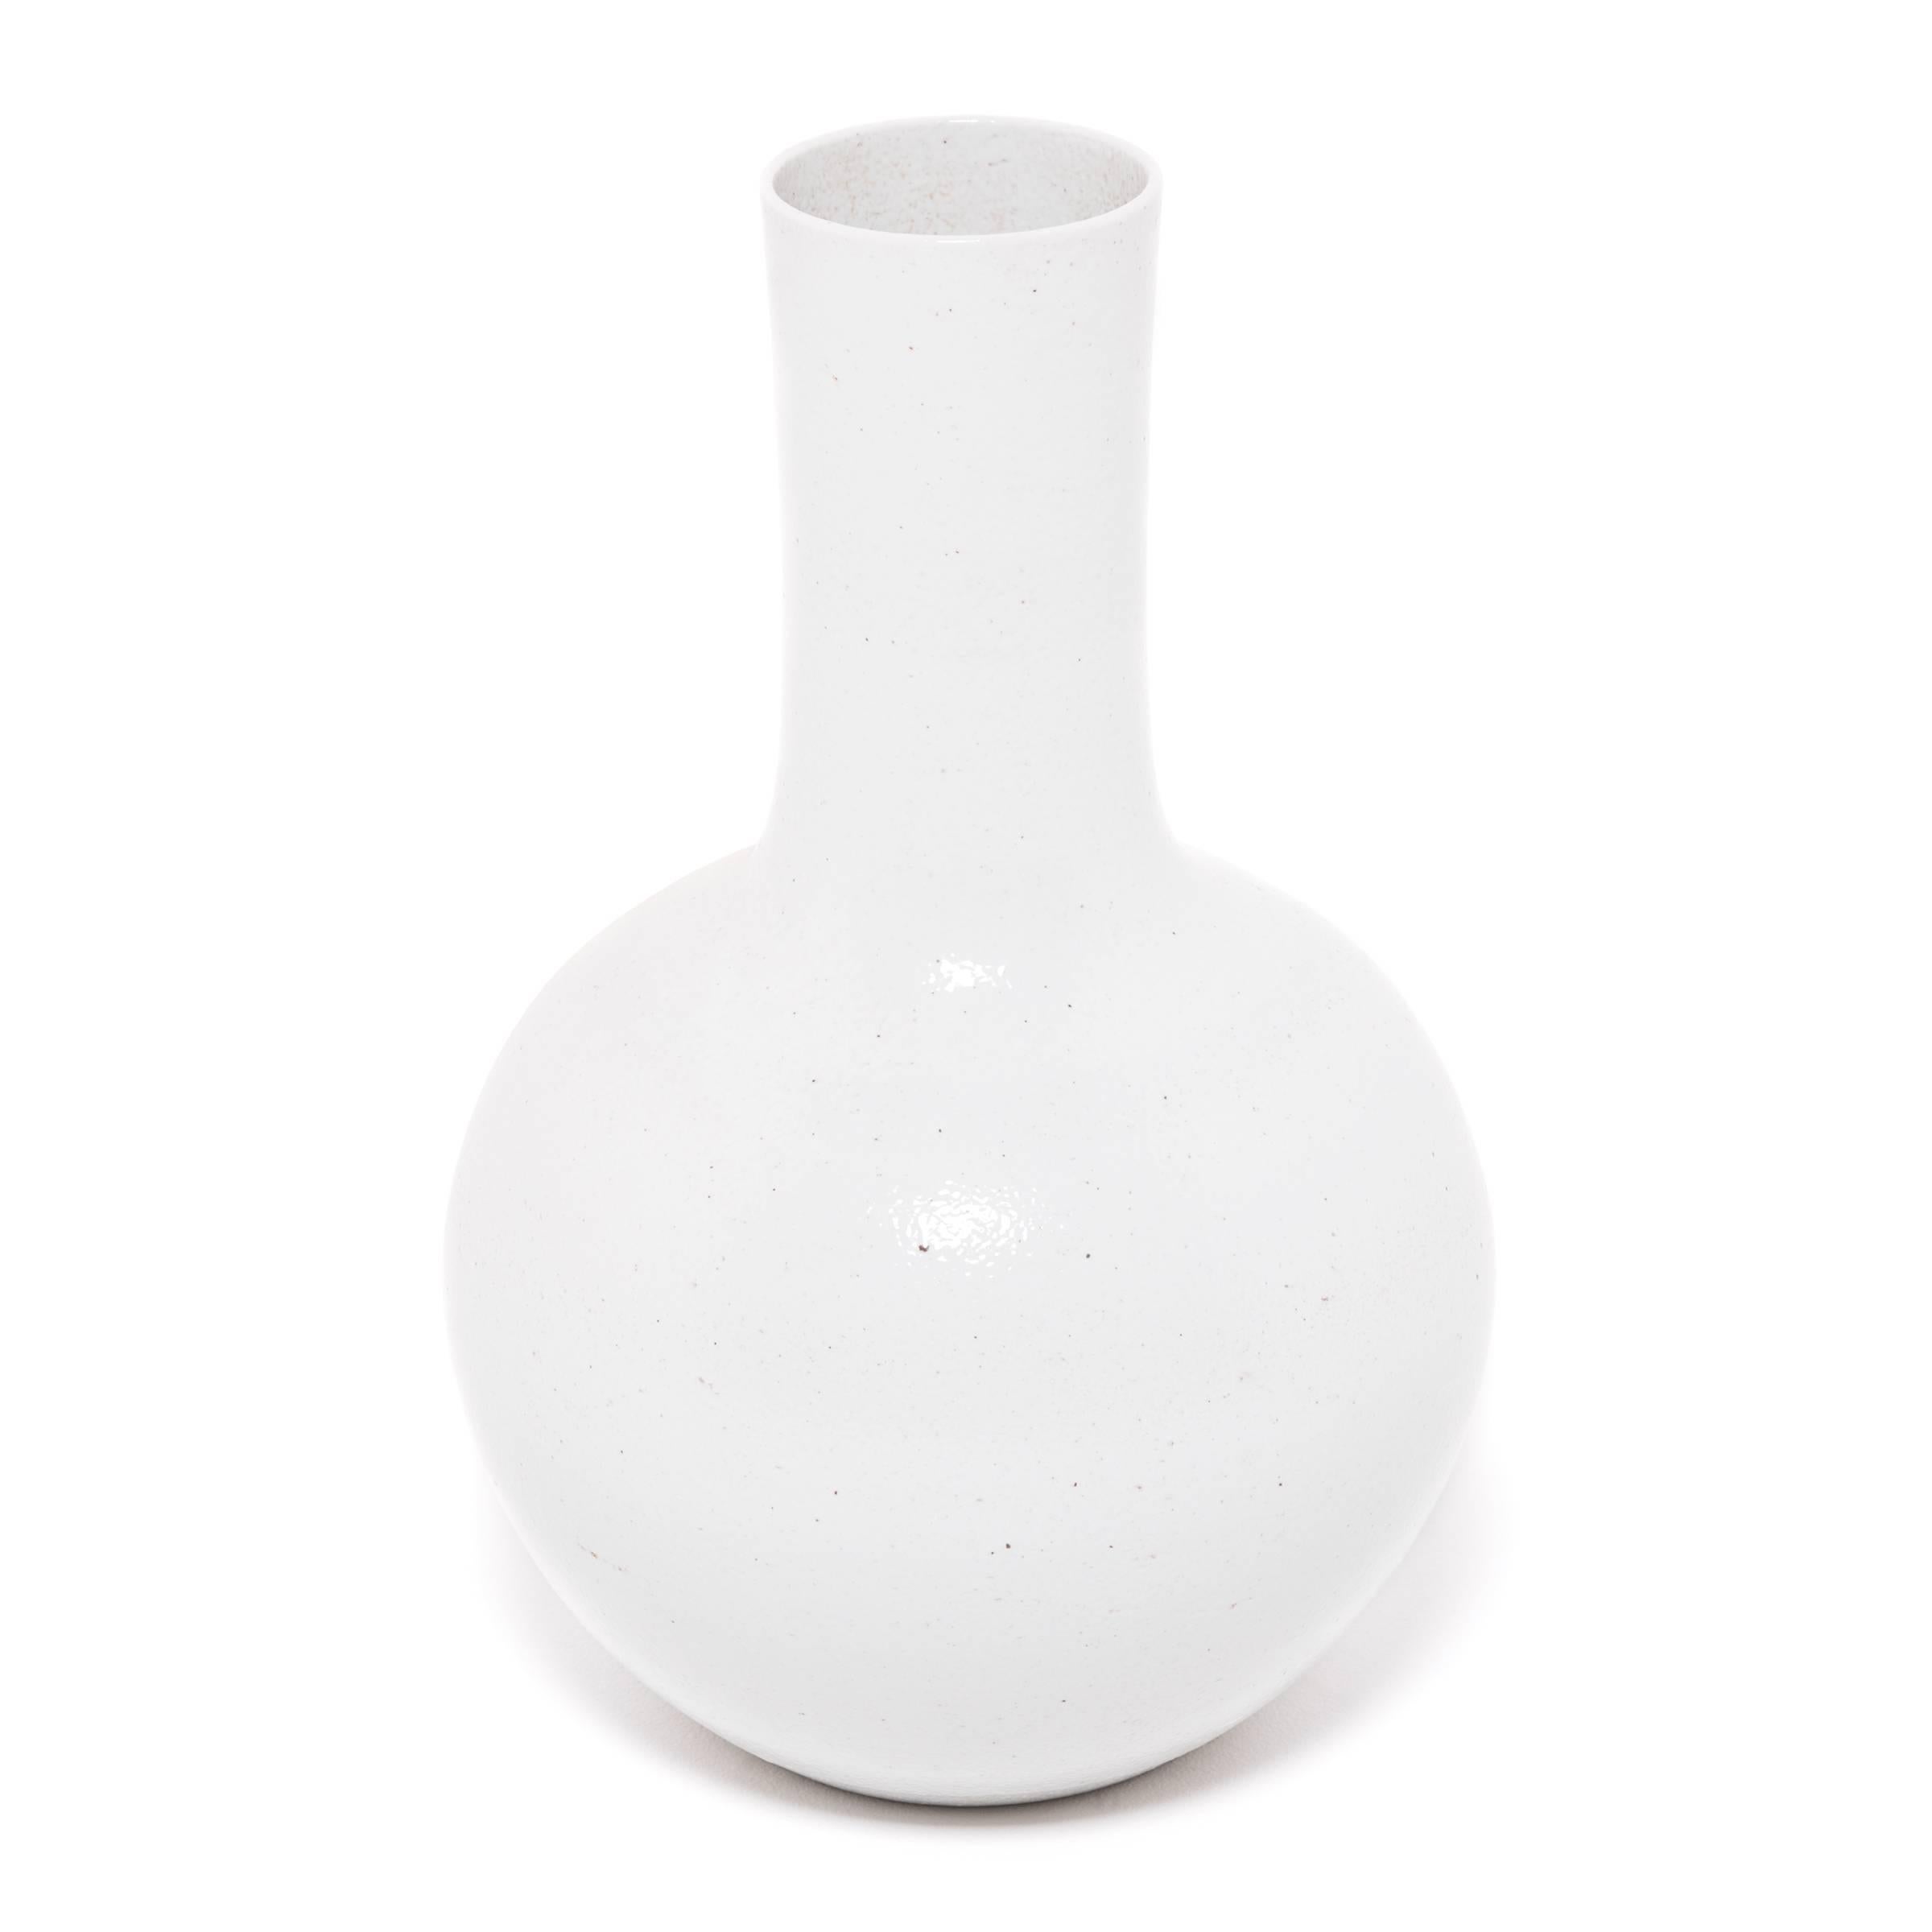 Diese auffällige Vase mit langem Hals, die auf eine lange chinesische Keramiktradition zurückgeht, ist mit einer milchig-weißen Glasur überzogen. Die von Kunsthandwerkern in der chinesischen Provinz Zhejiang gefertigte große Vase ist eine